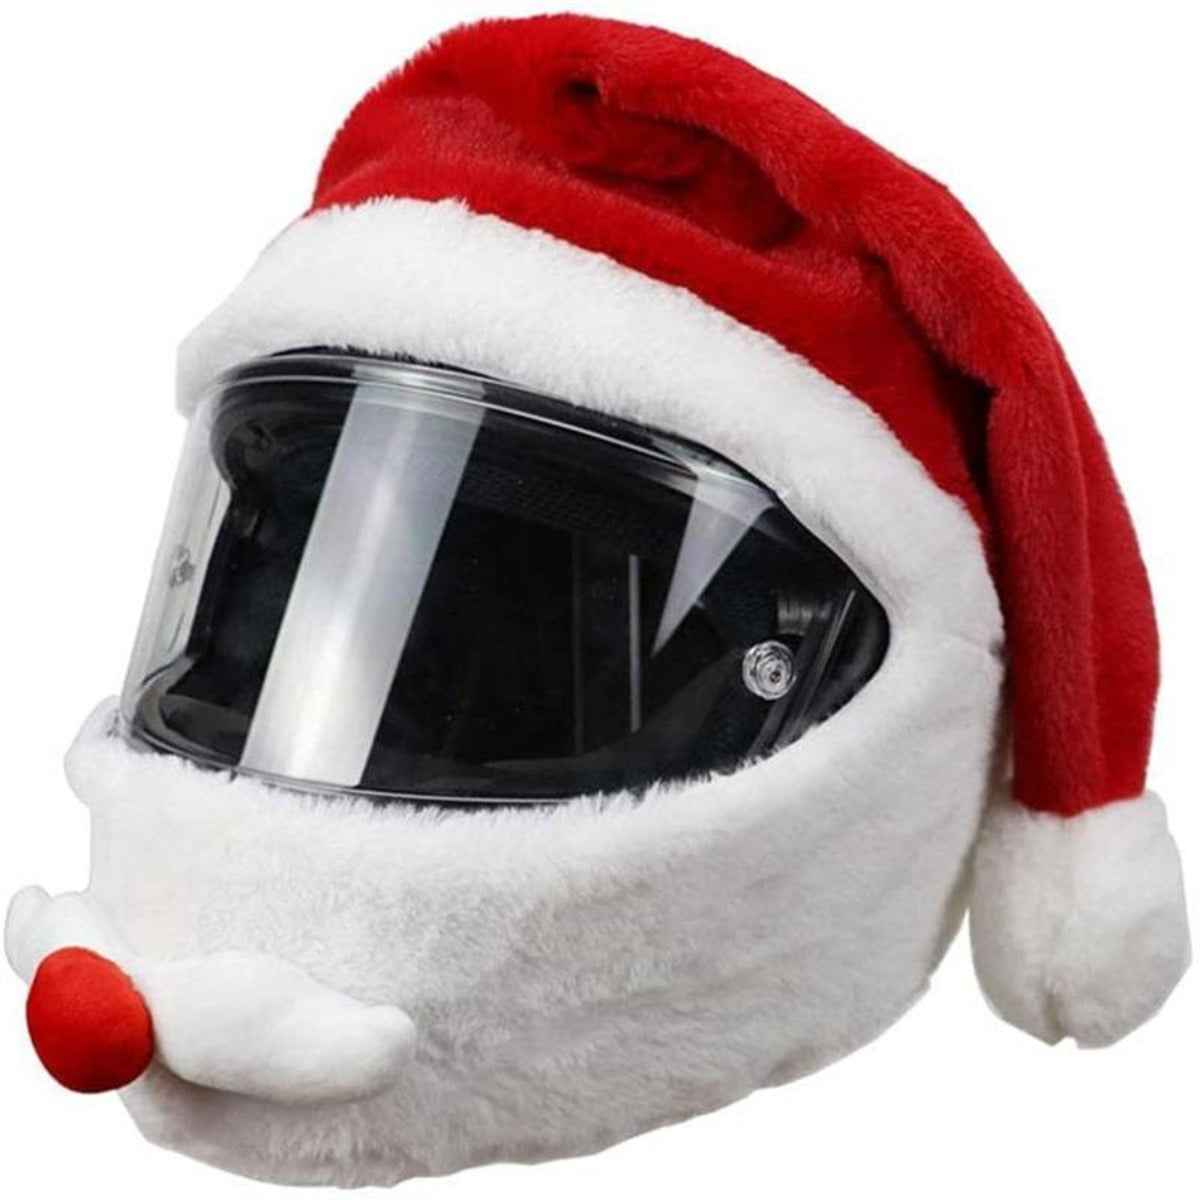 Santa Claus Helmet Cover